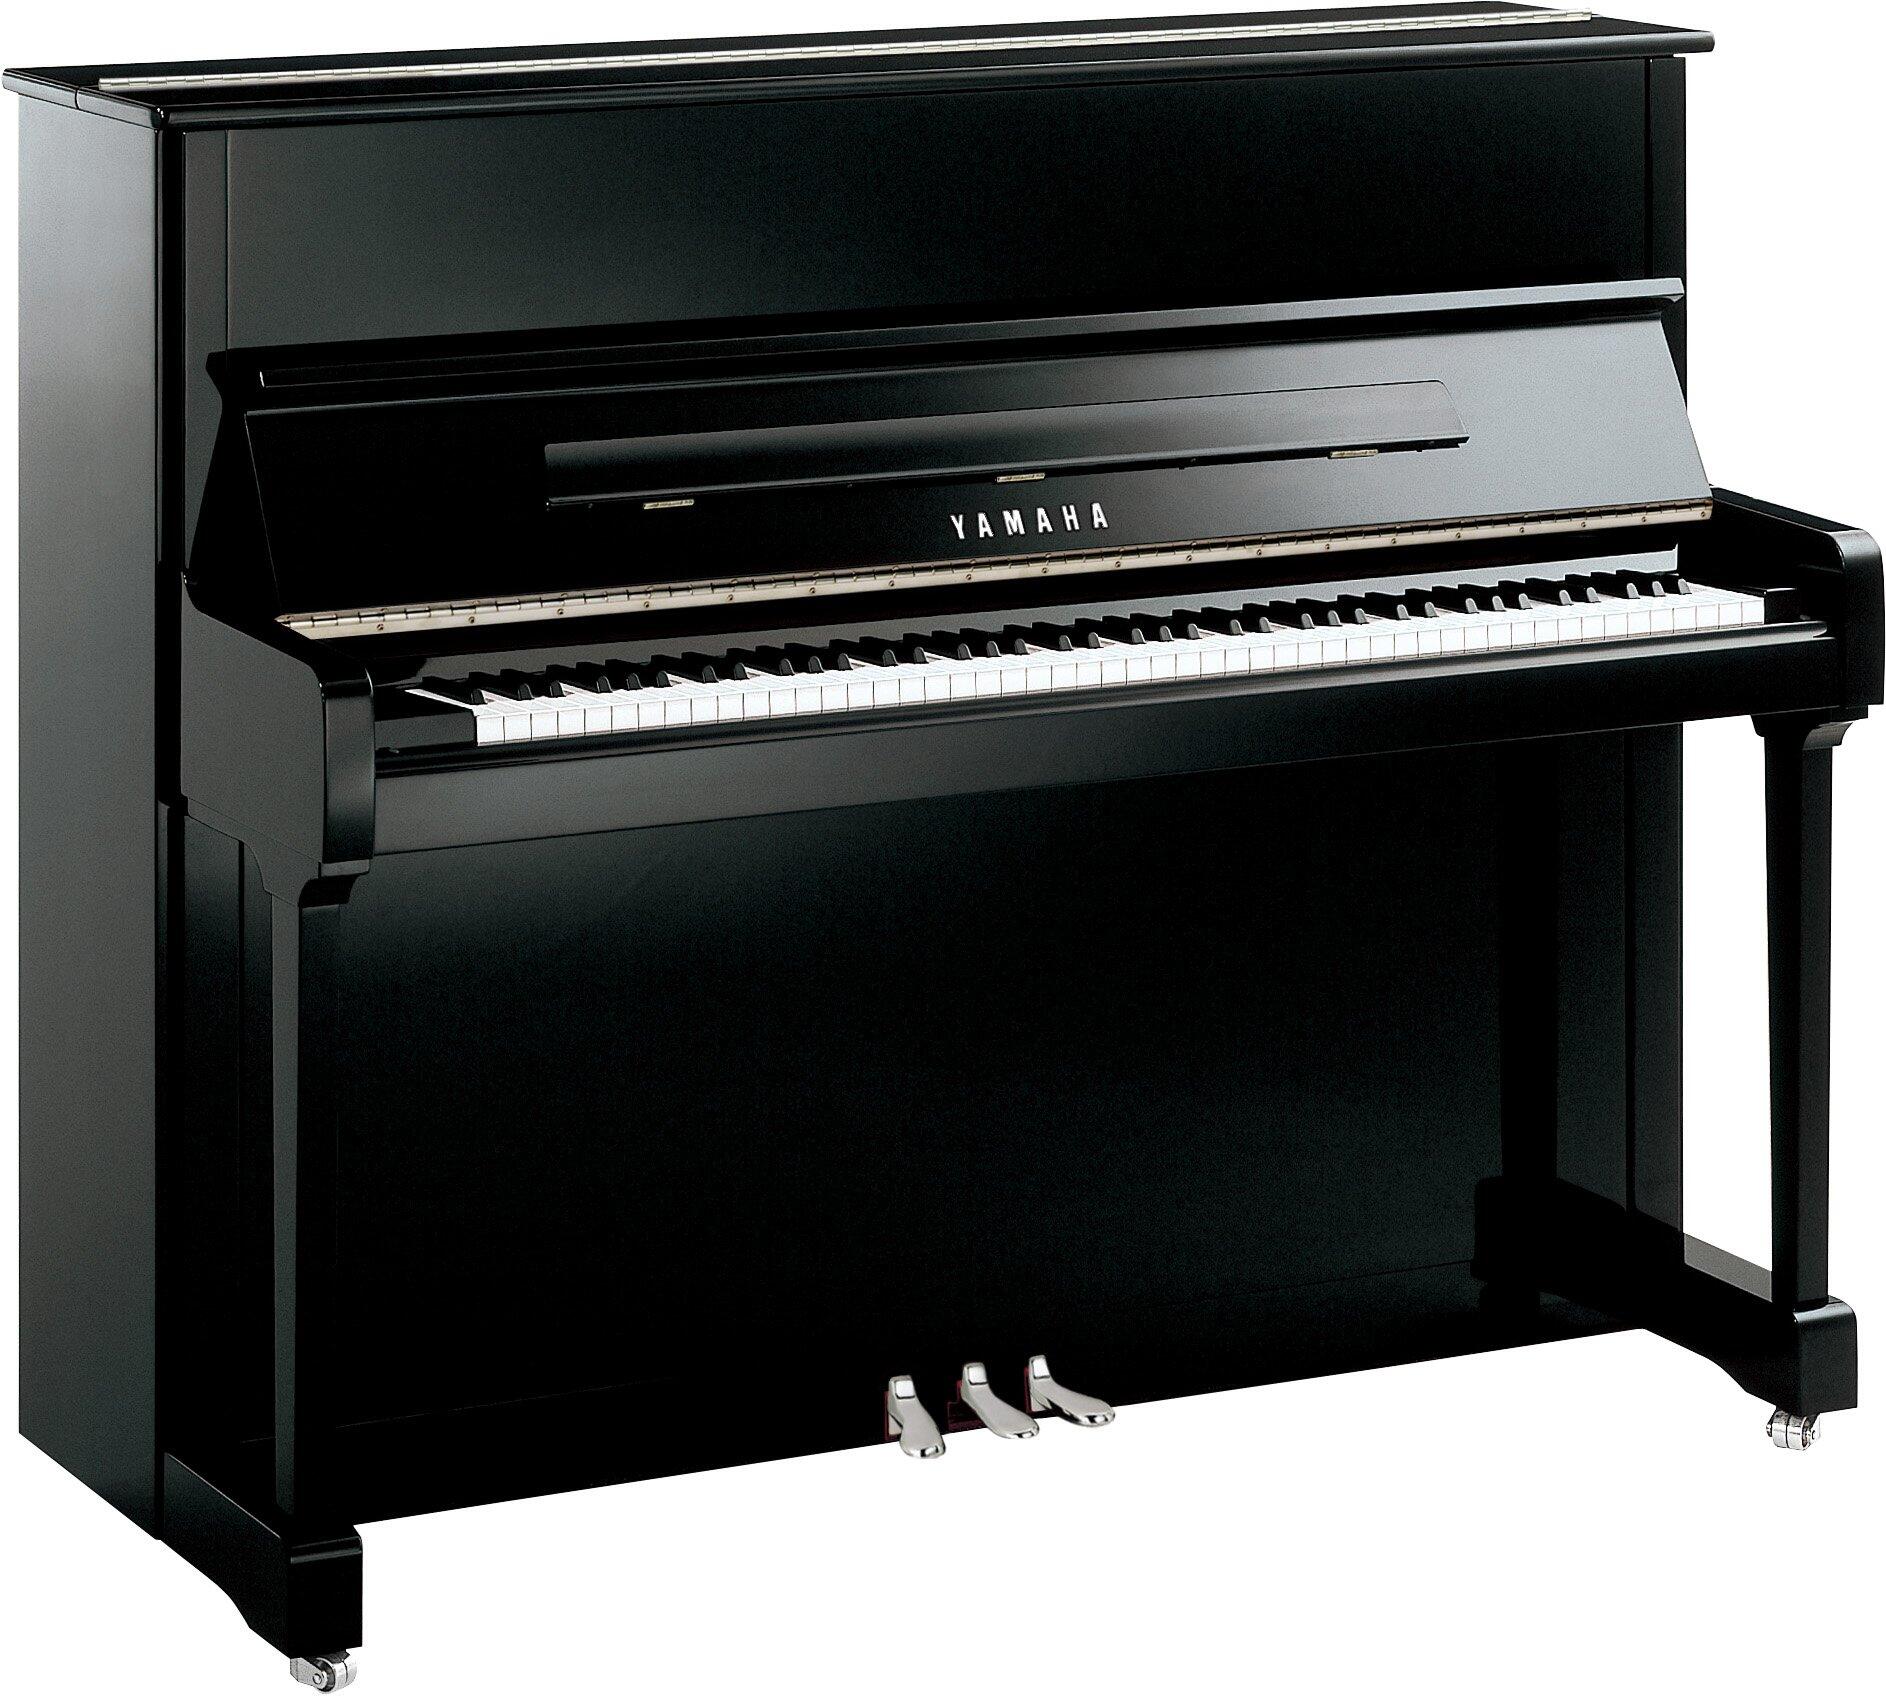 Yamaha Pianos Acoustic P121 PEC Noir poli-brillant Chrome 121 cm : photo 1